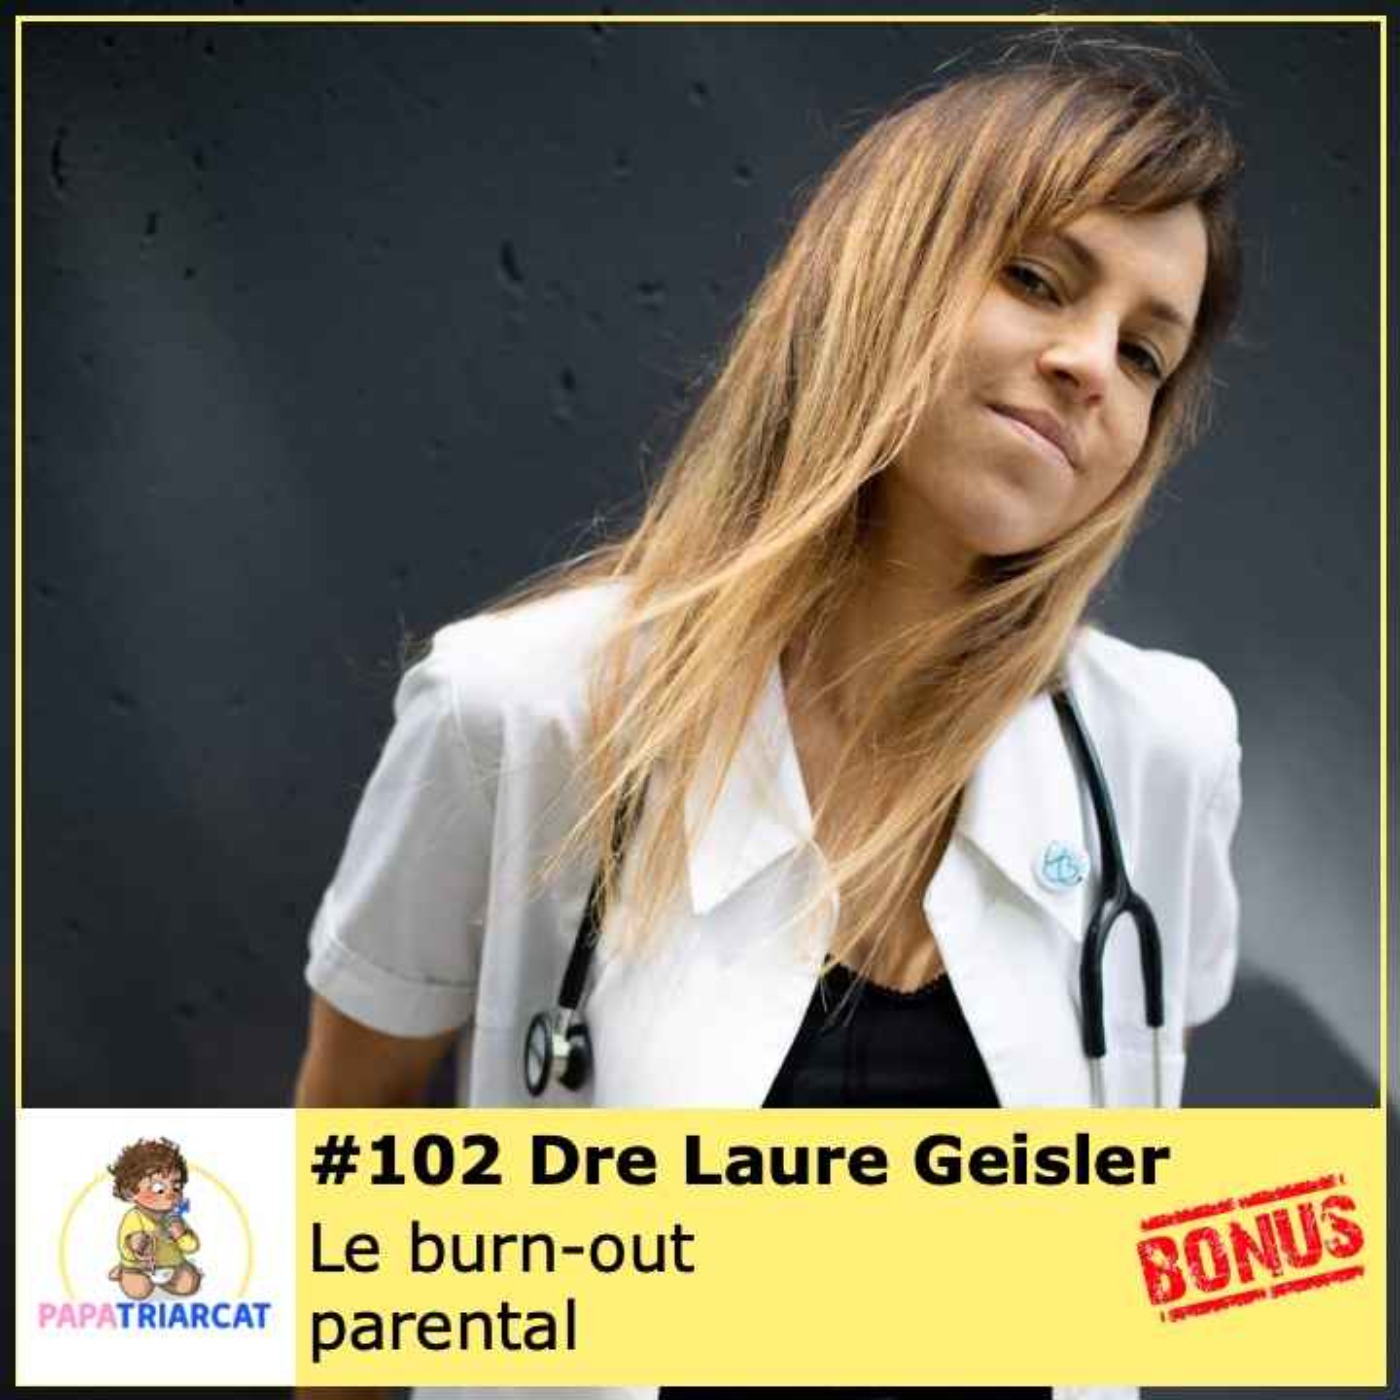 DECOUVERTE BONUS #102 - Le burn-out parental - Dre Laure Geisler